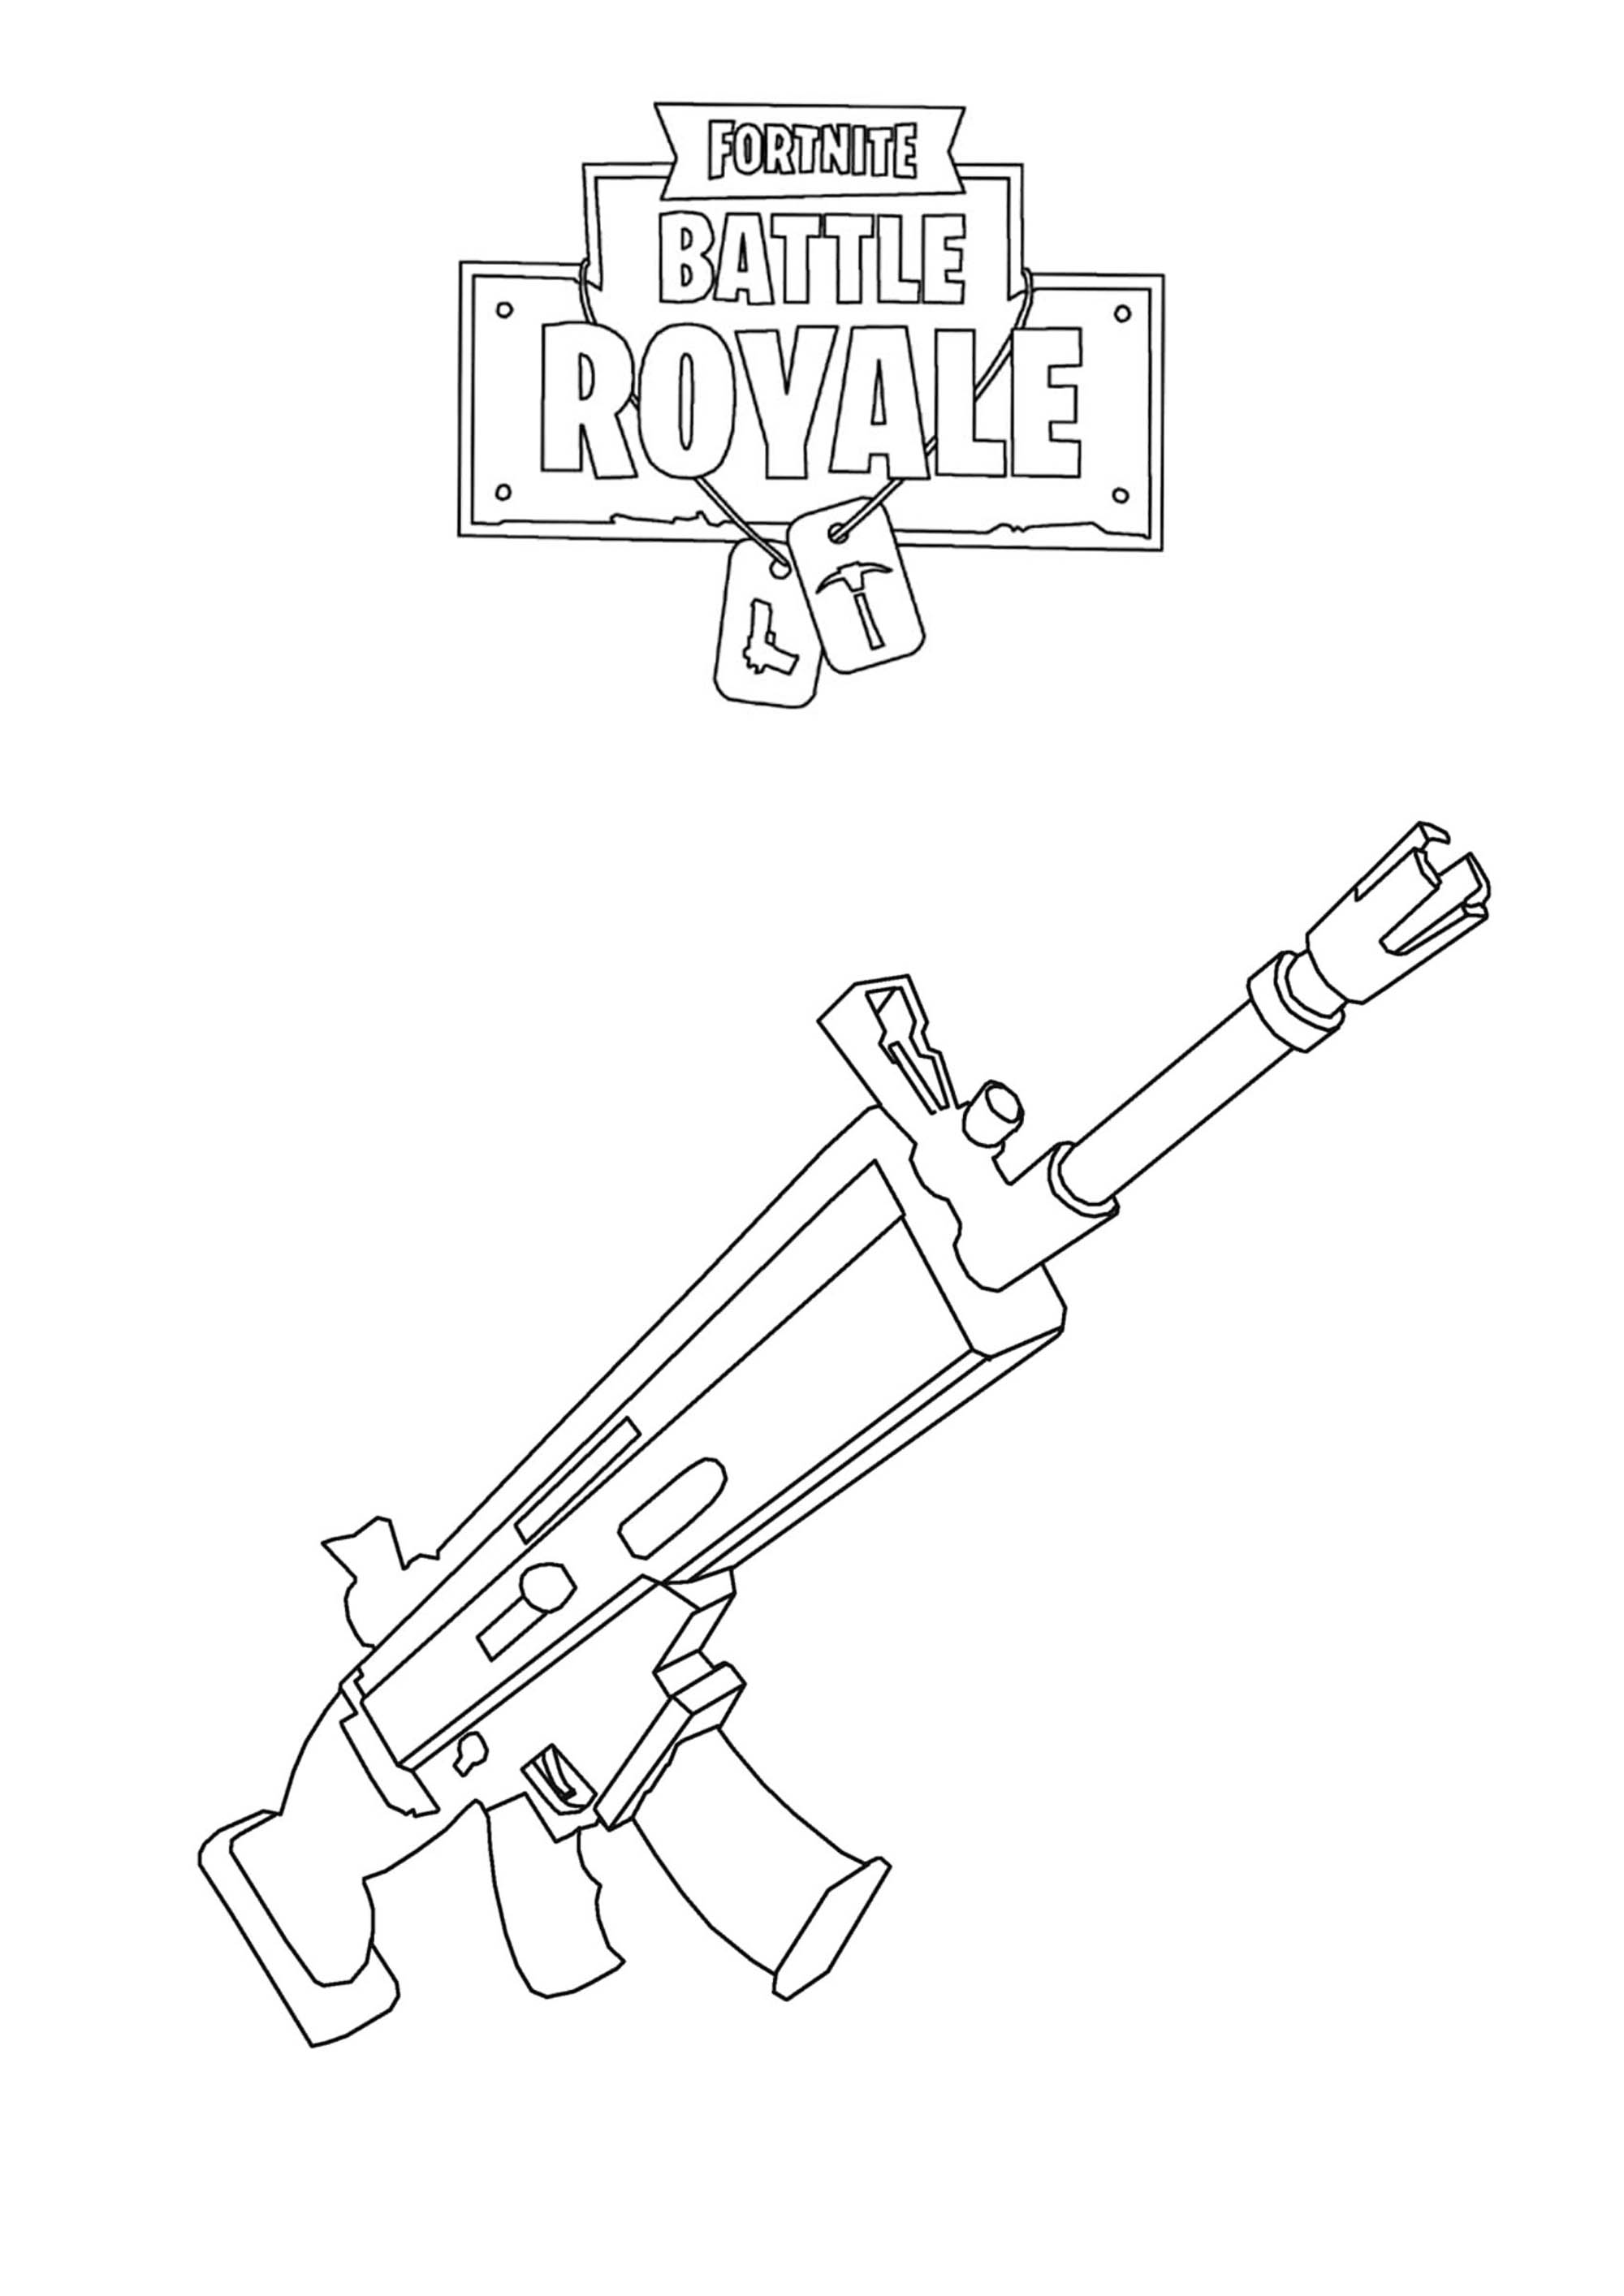 Fortnite Scar H Drawing Fortnite Battle Royale Scar H Fortnite Battle Royale Kids Coloring Pages